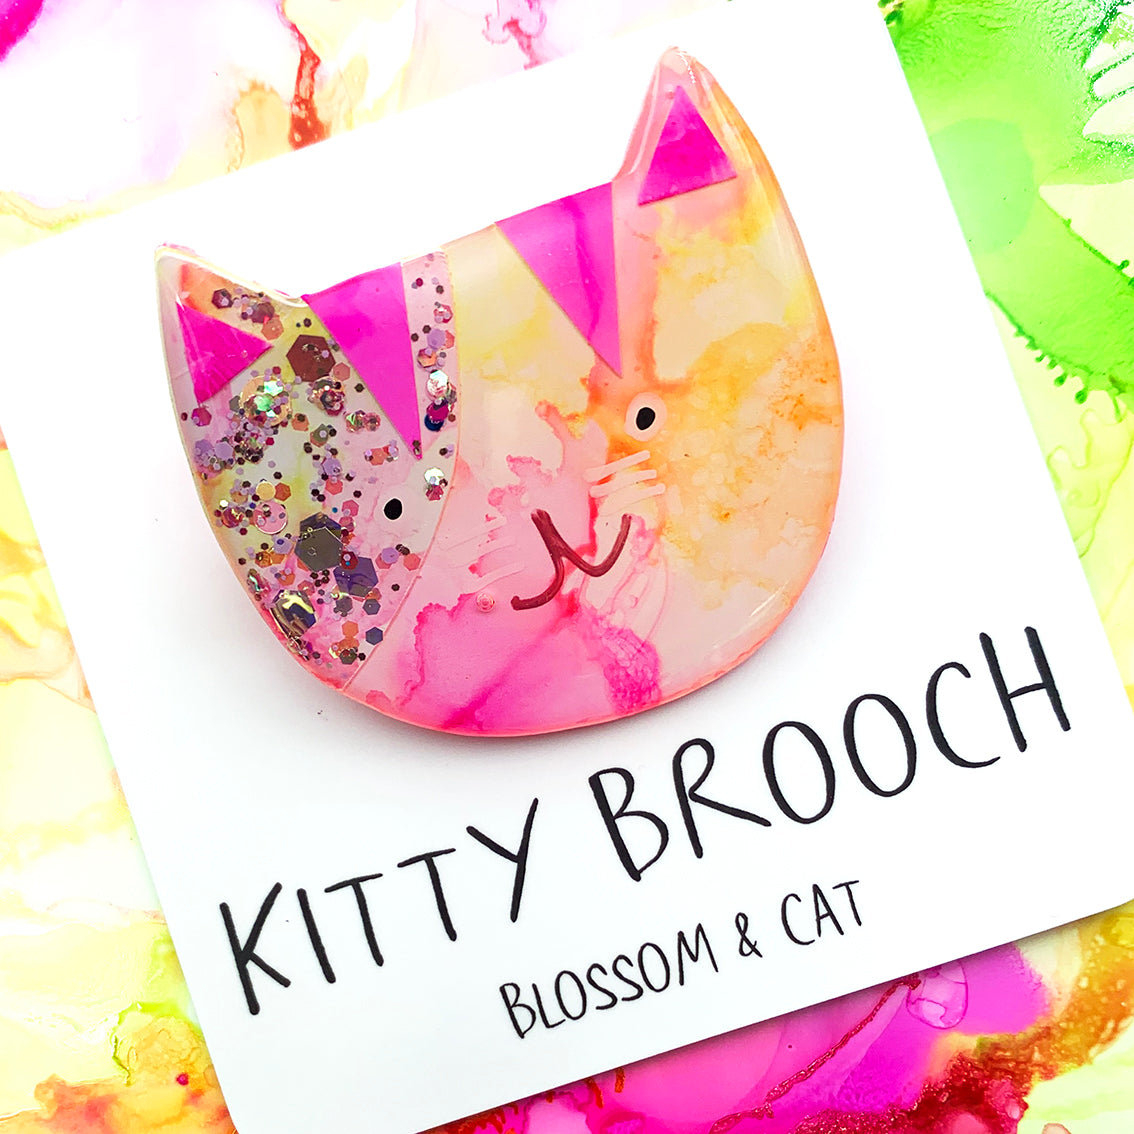 Kitty Brooch · Mixed Media · 63